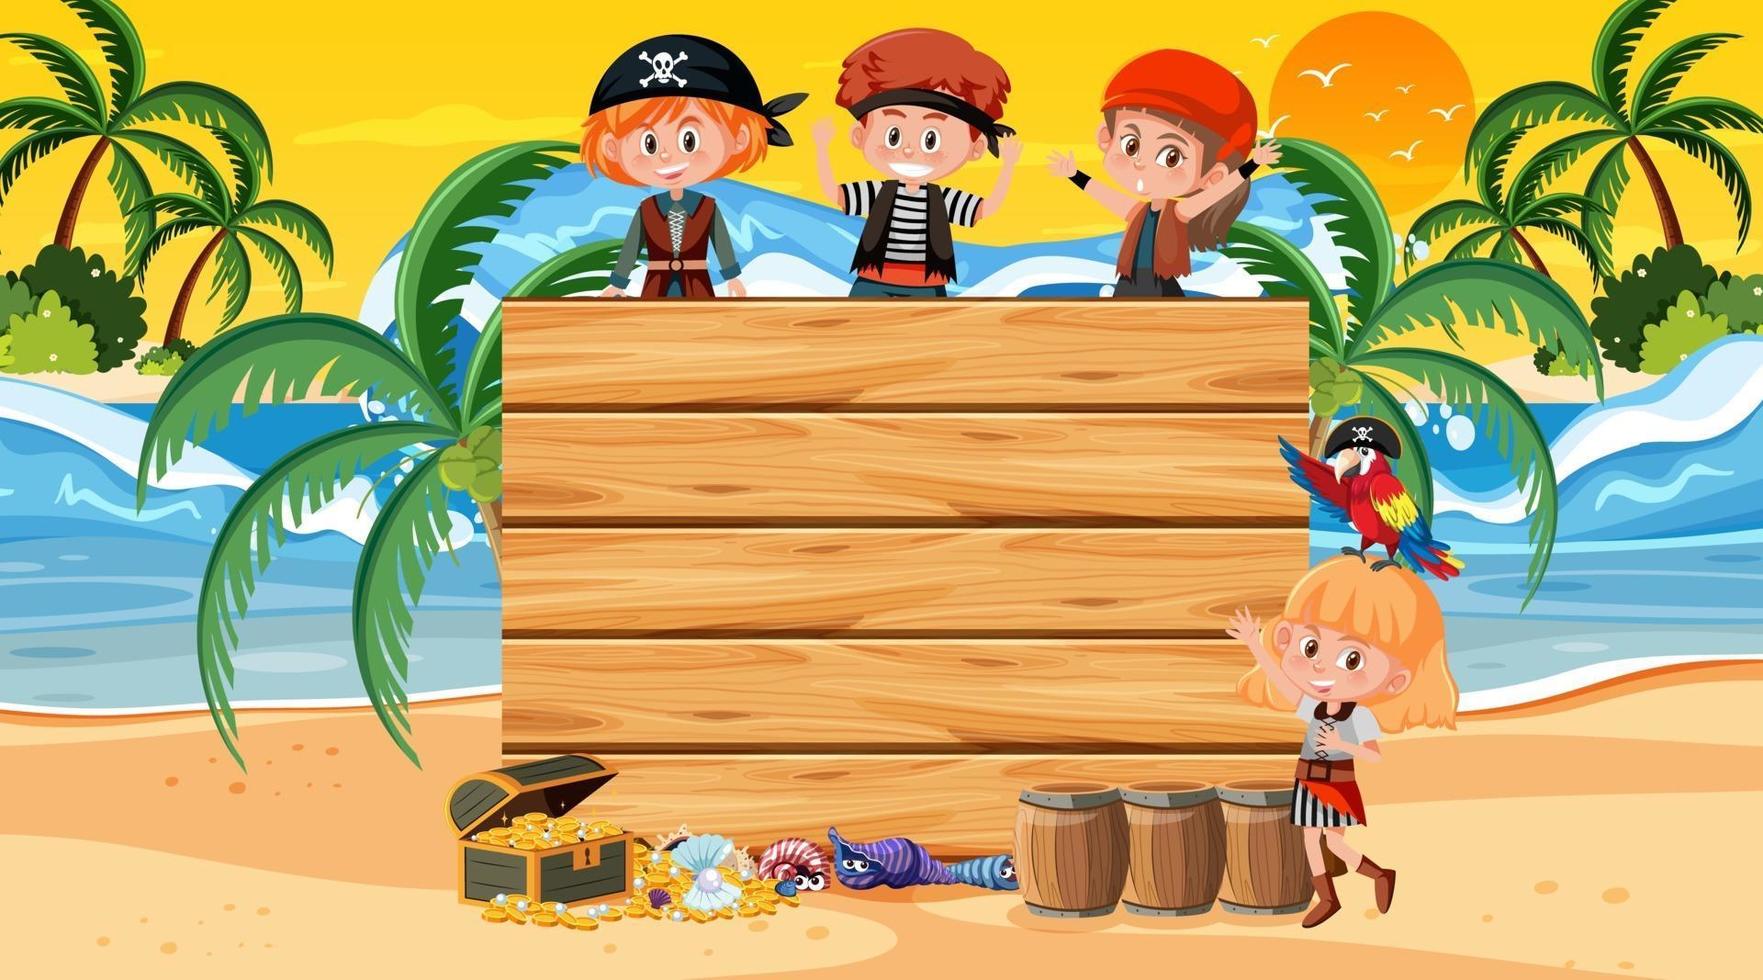 modelo de banner vazio com crianças piratas na cena do pôr do sol na praia vetor